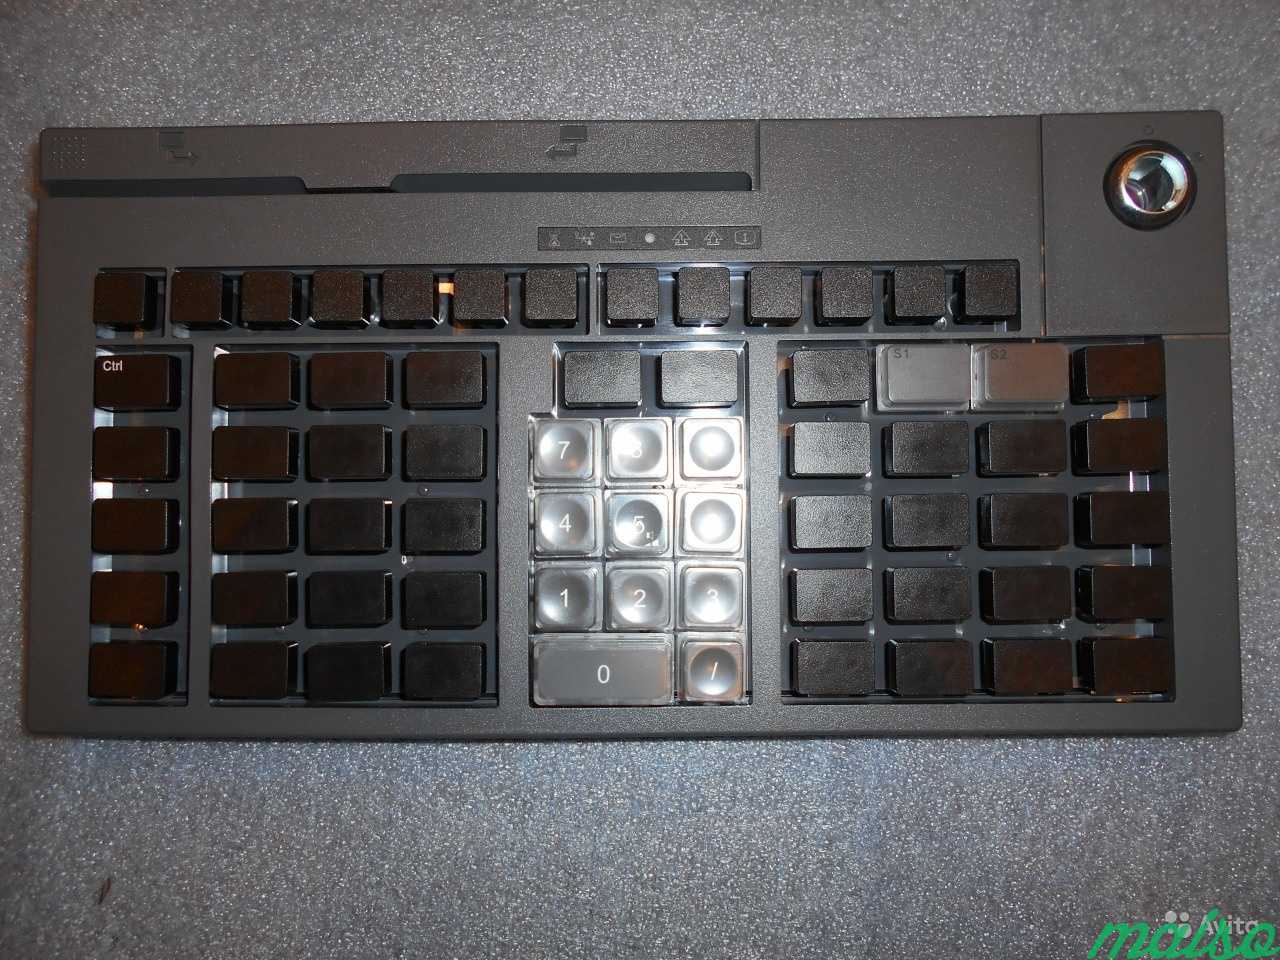 Программируемая POS клавиатура IBM Toshiba 67 key в Москве. Фото 4